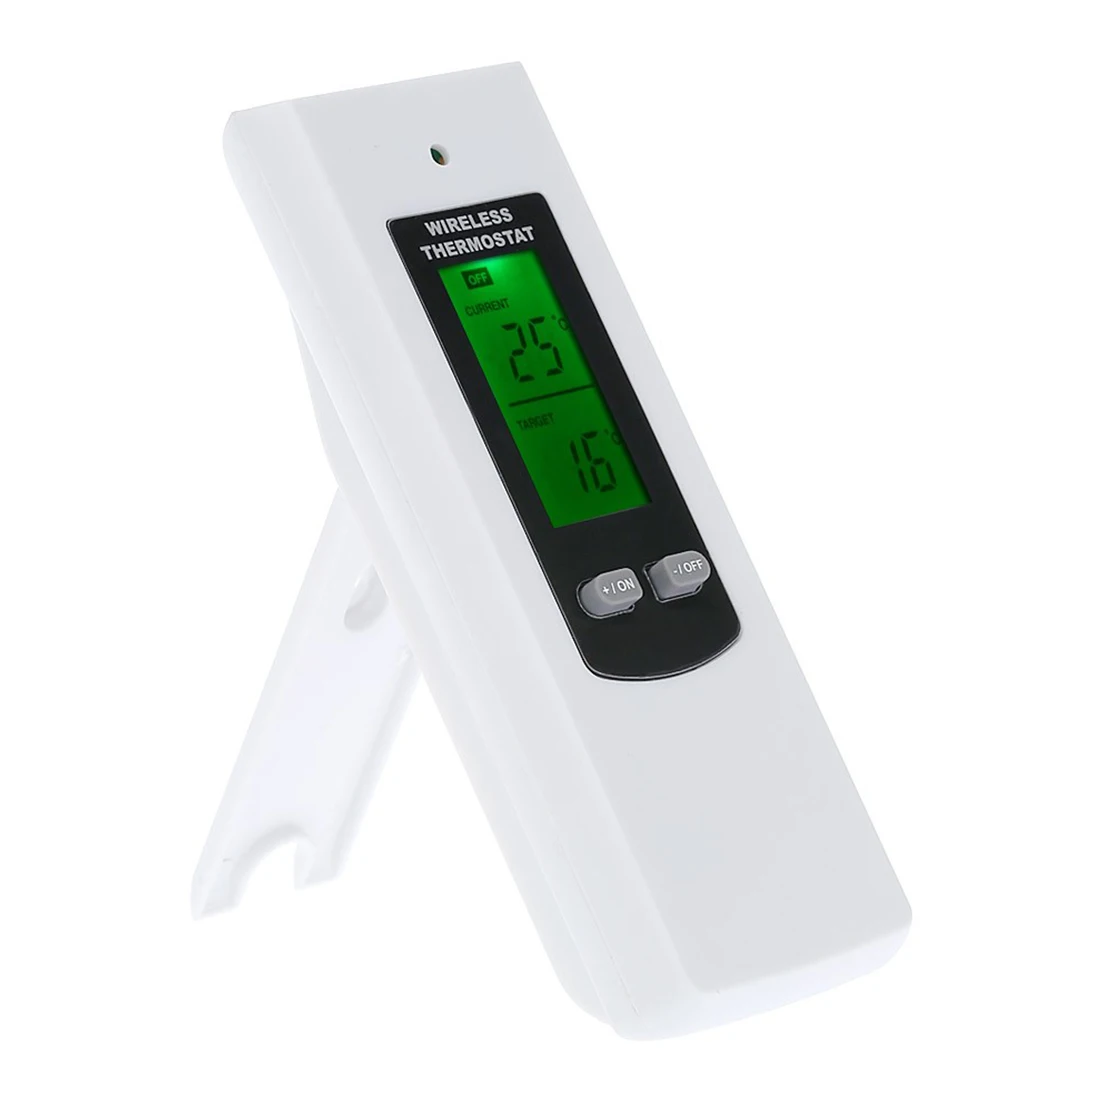 Беспроводной термостат контроль температуры розетка ЖК-дисплей терморегулятор контроль температуры розетка EU/US/UK вилка